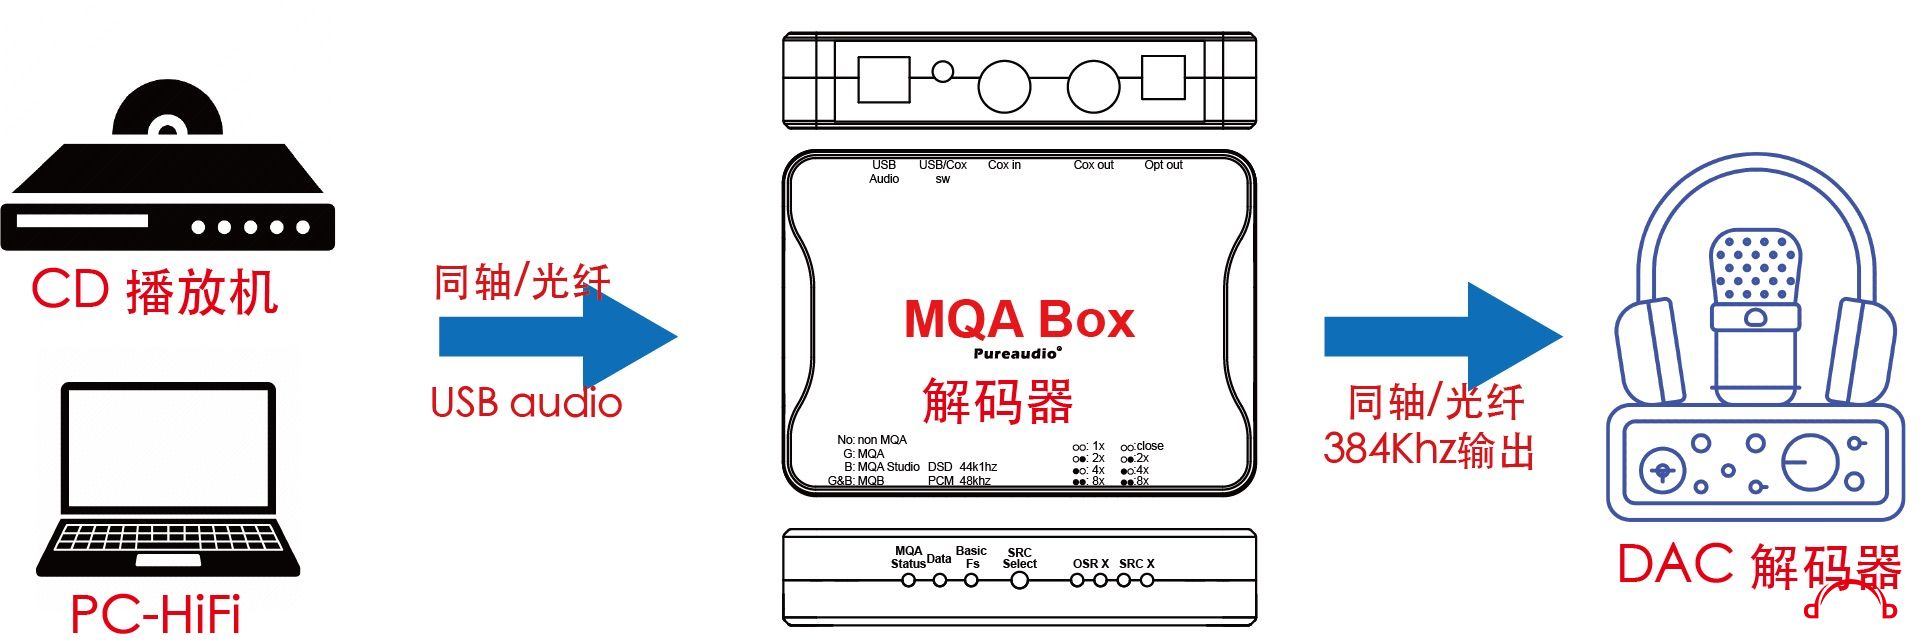 MQA box3.jpg